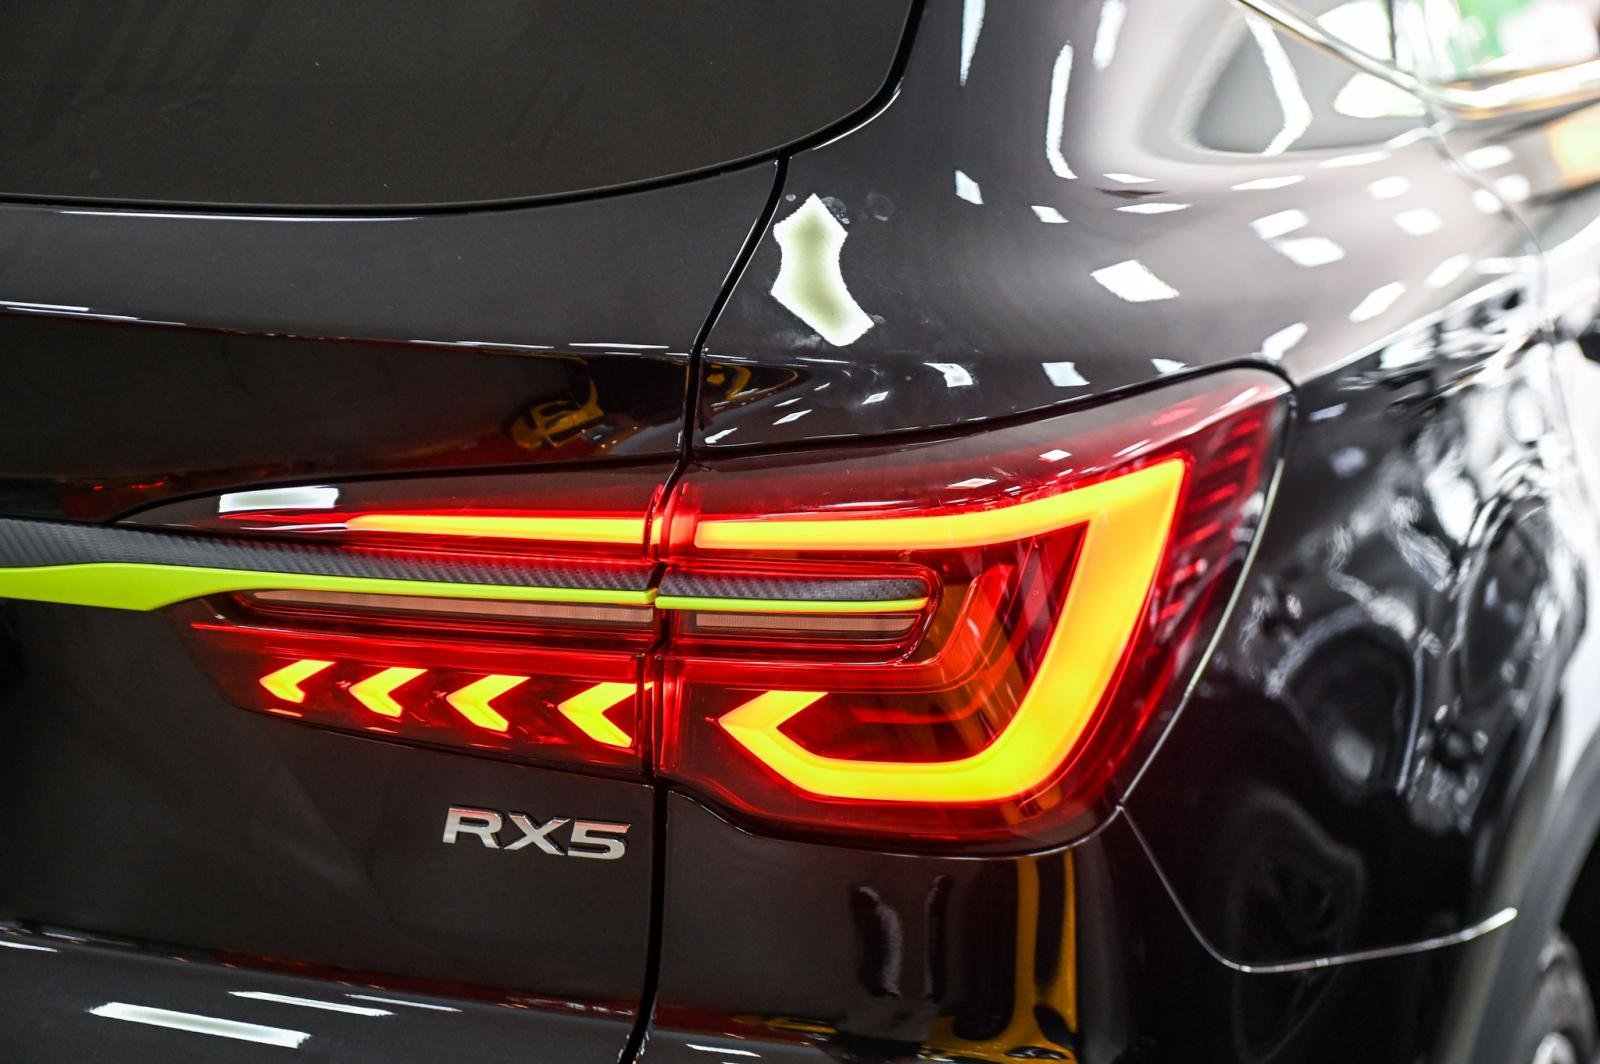 Đèn hậu xe MG RX5 tạo hình cuốn hút như xe sang